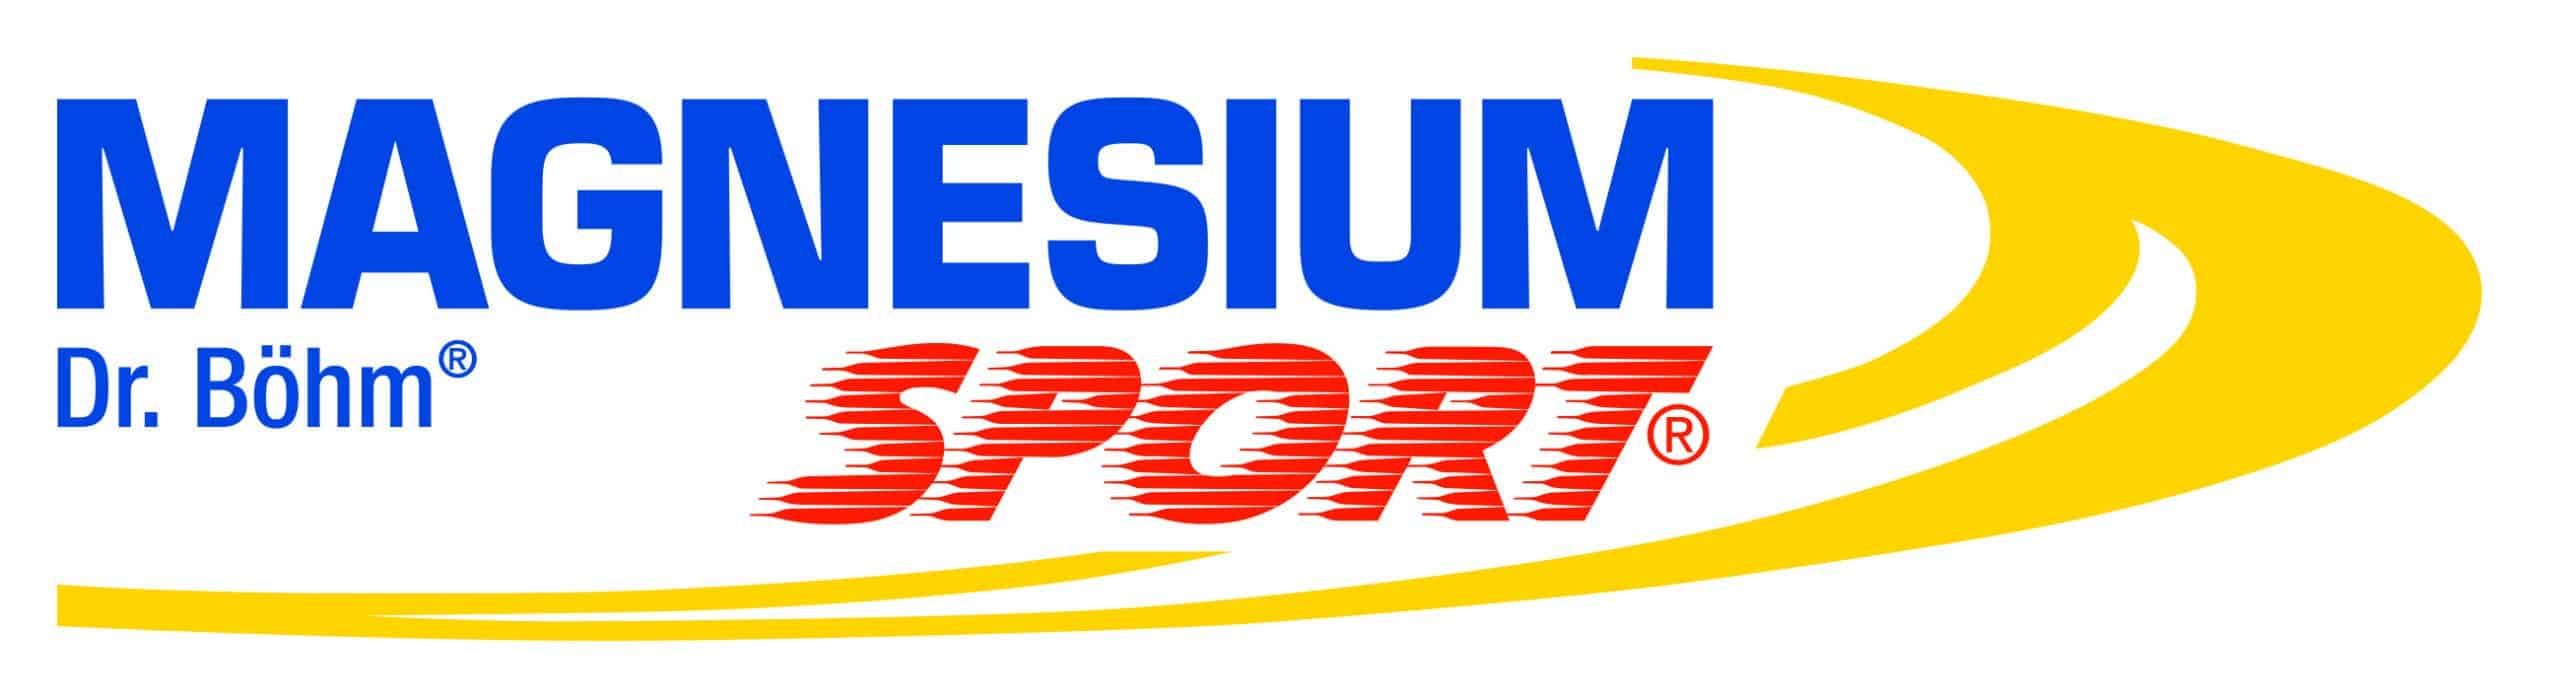 MagnesiumSport_Logo_4c